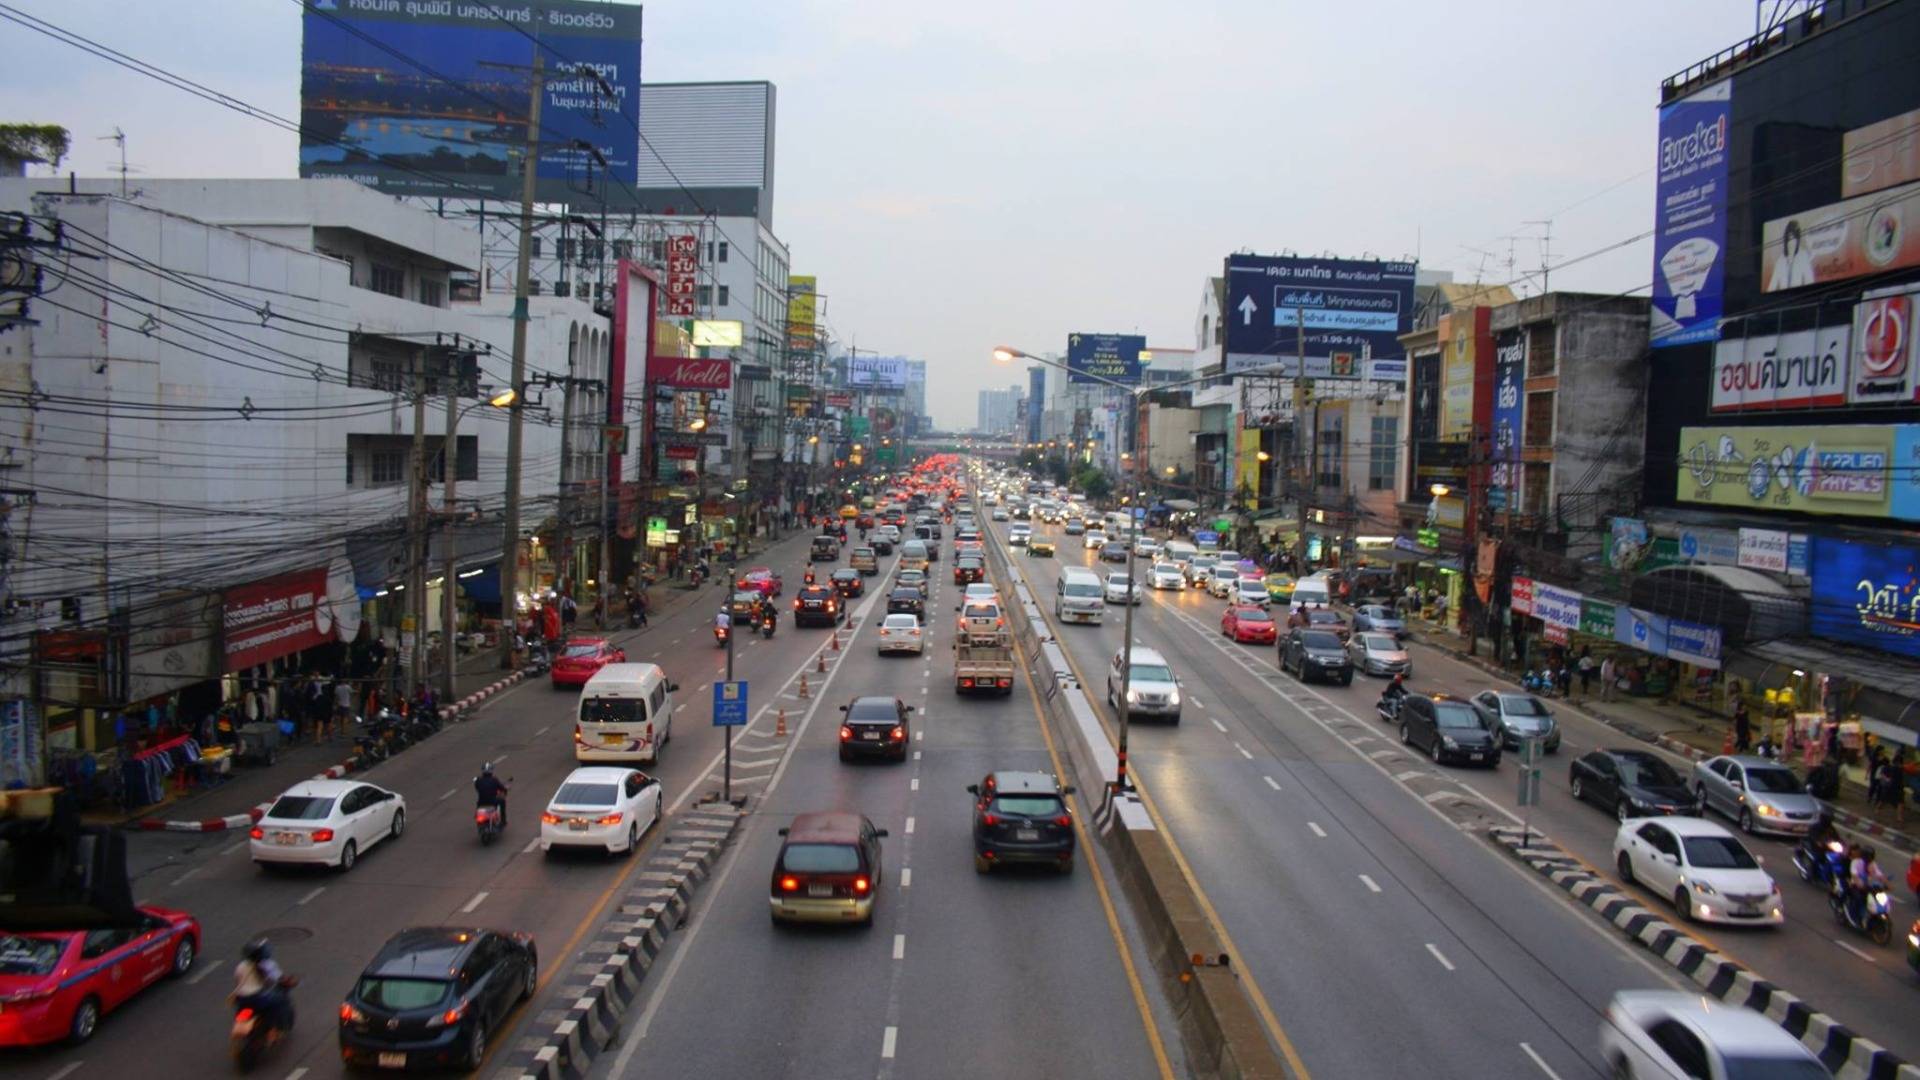 Noisy streets of Bangkok